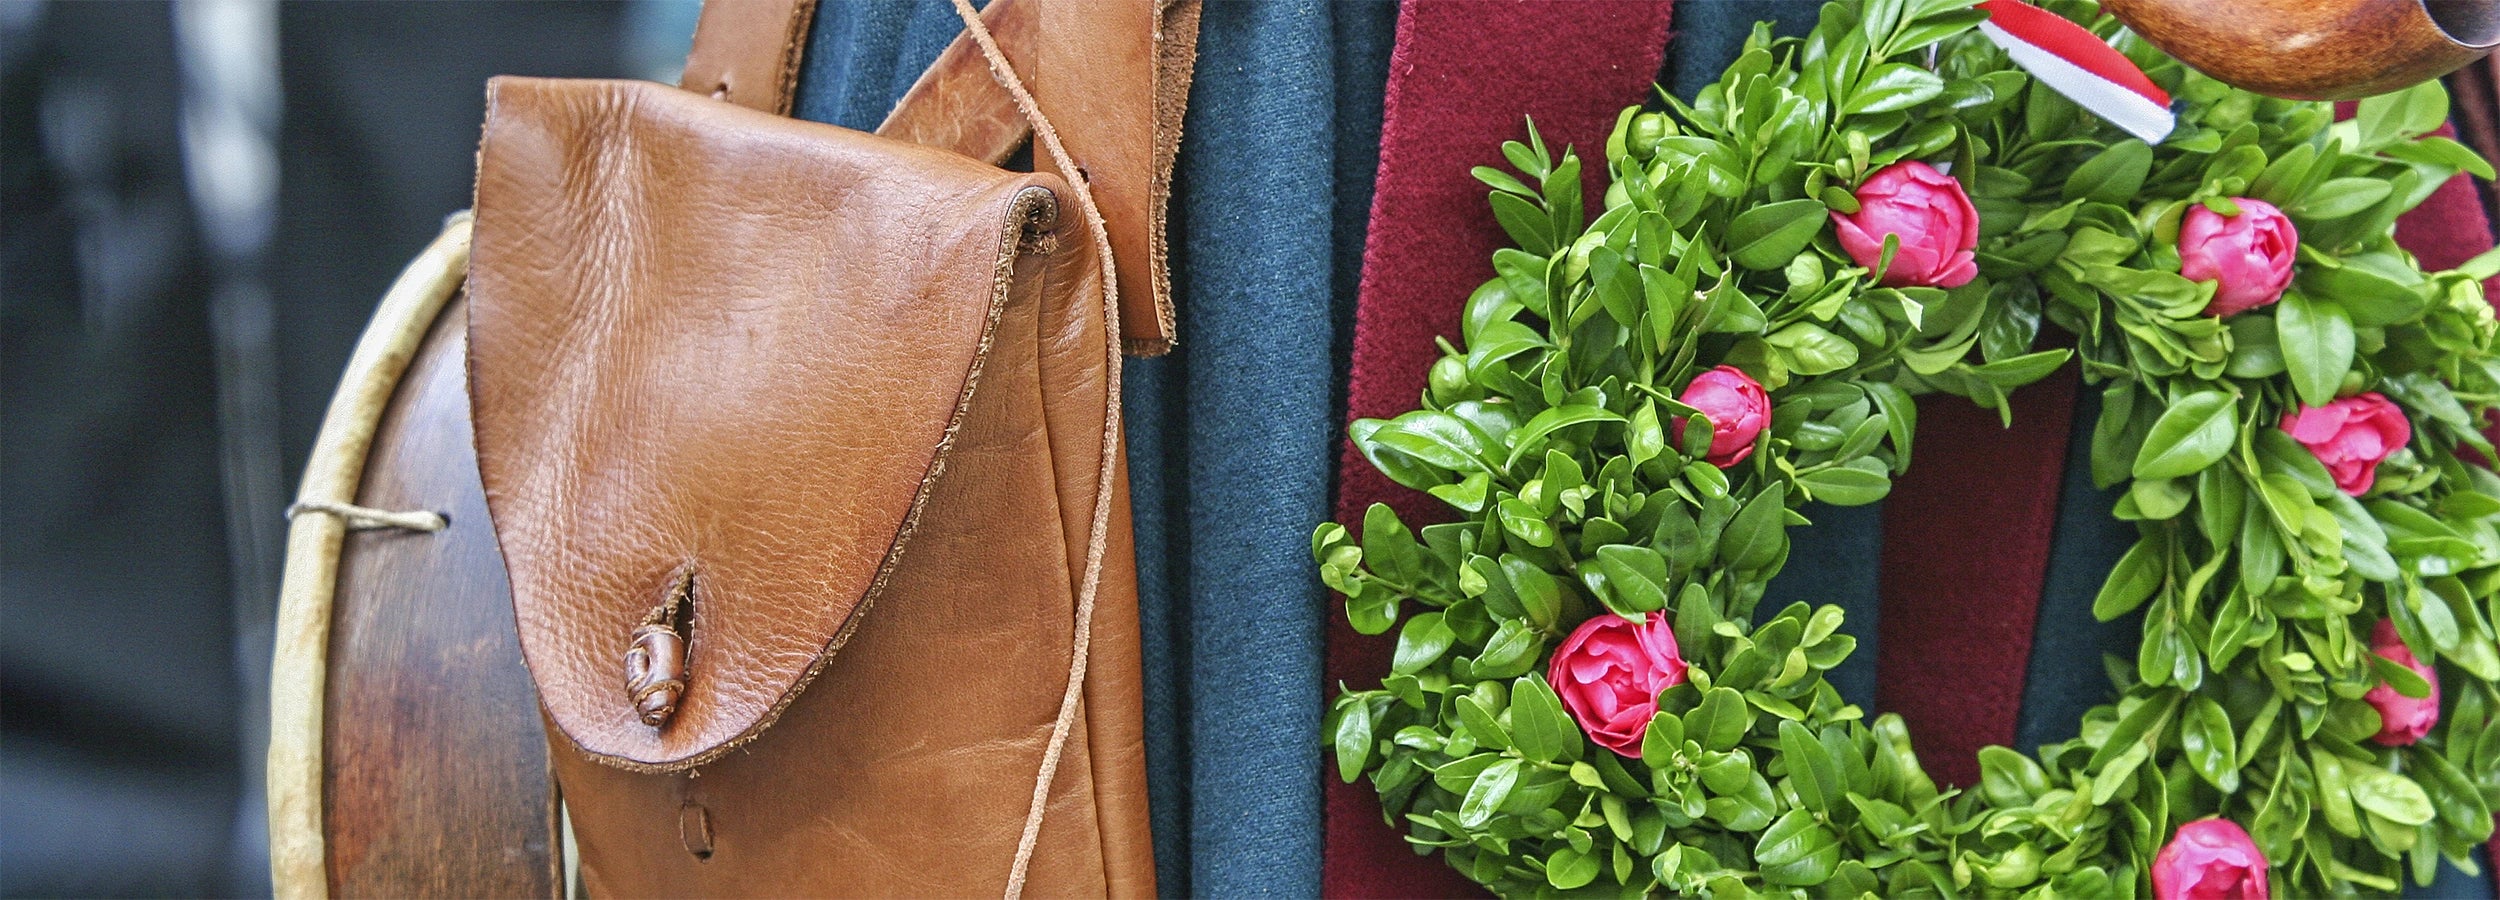 Landshuter Hochzeit - HEITER & LÄSSIG Klamotten aus BIO-Baumwolle